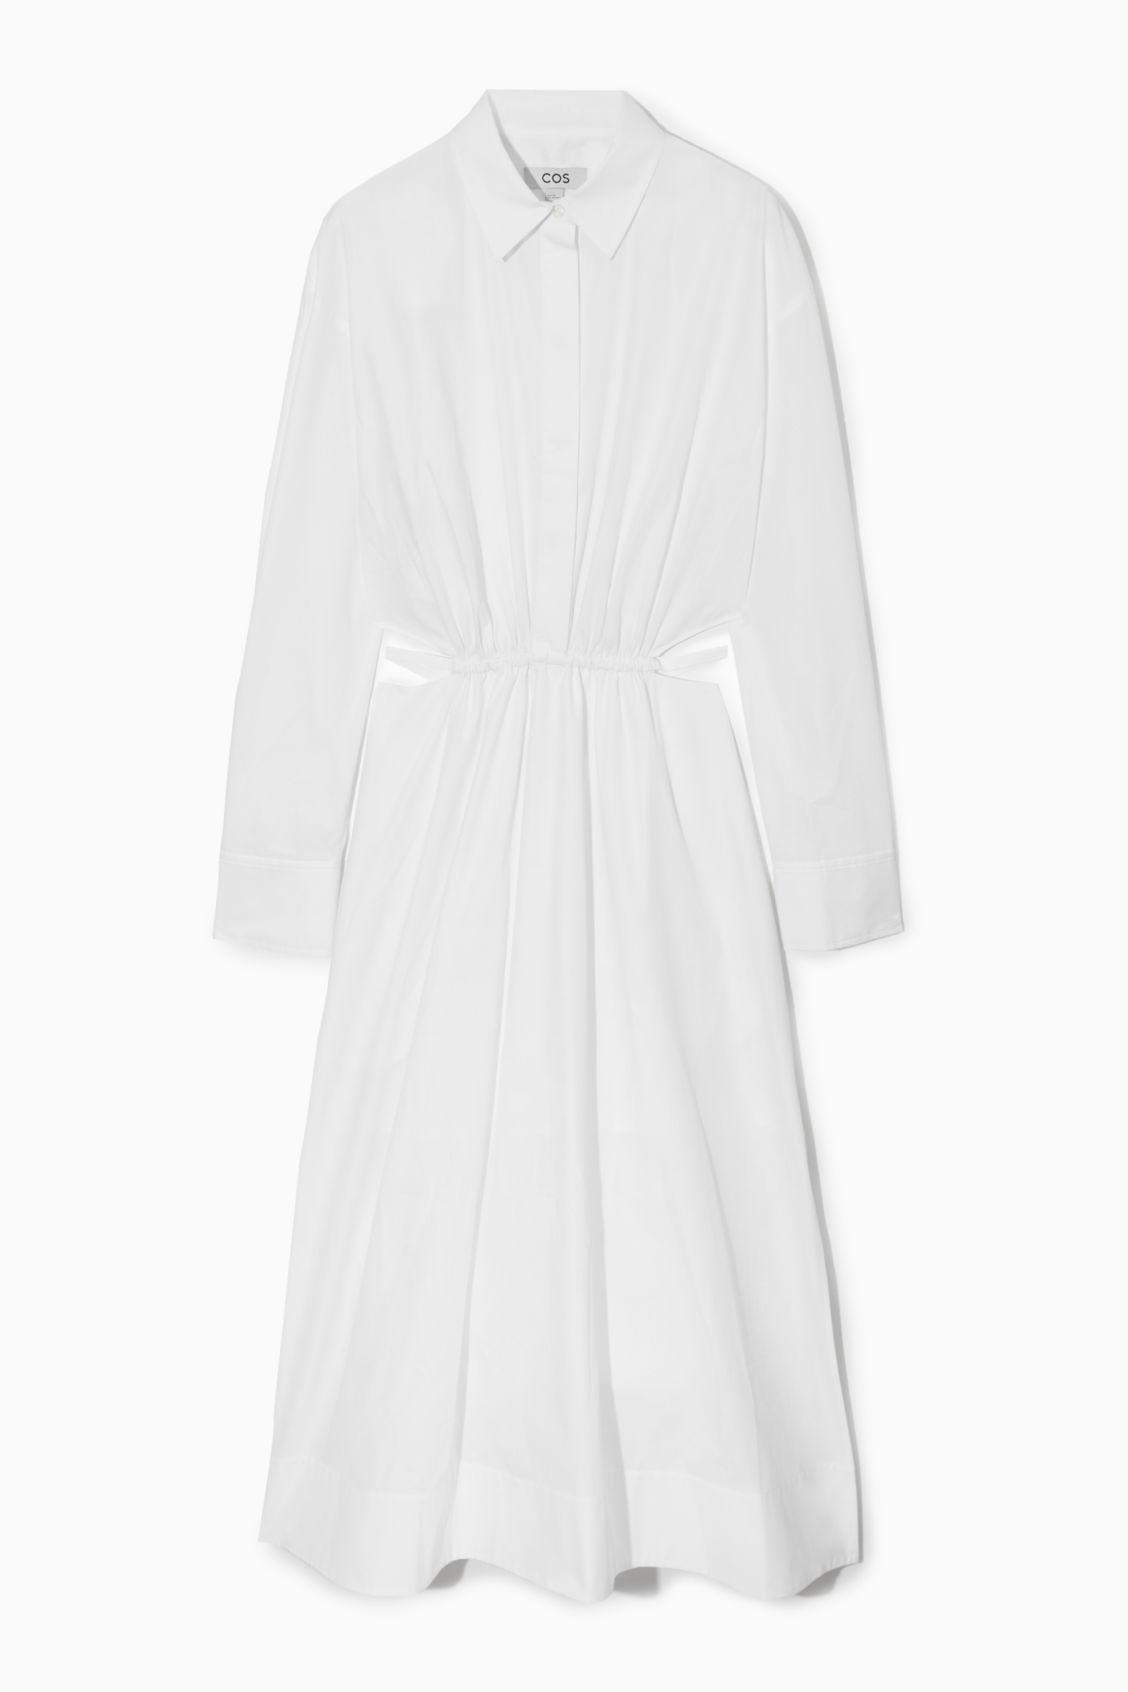 COS Cutout-waist Midi Shirt Dress in White | Lyst